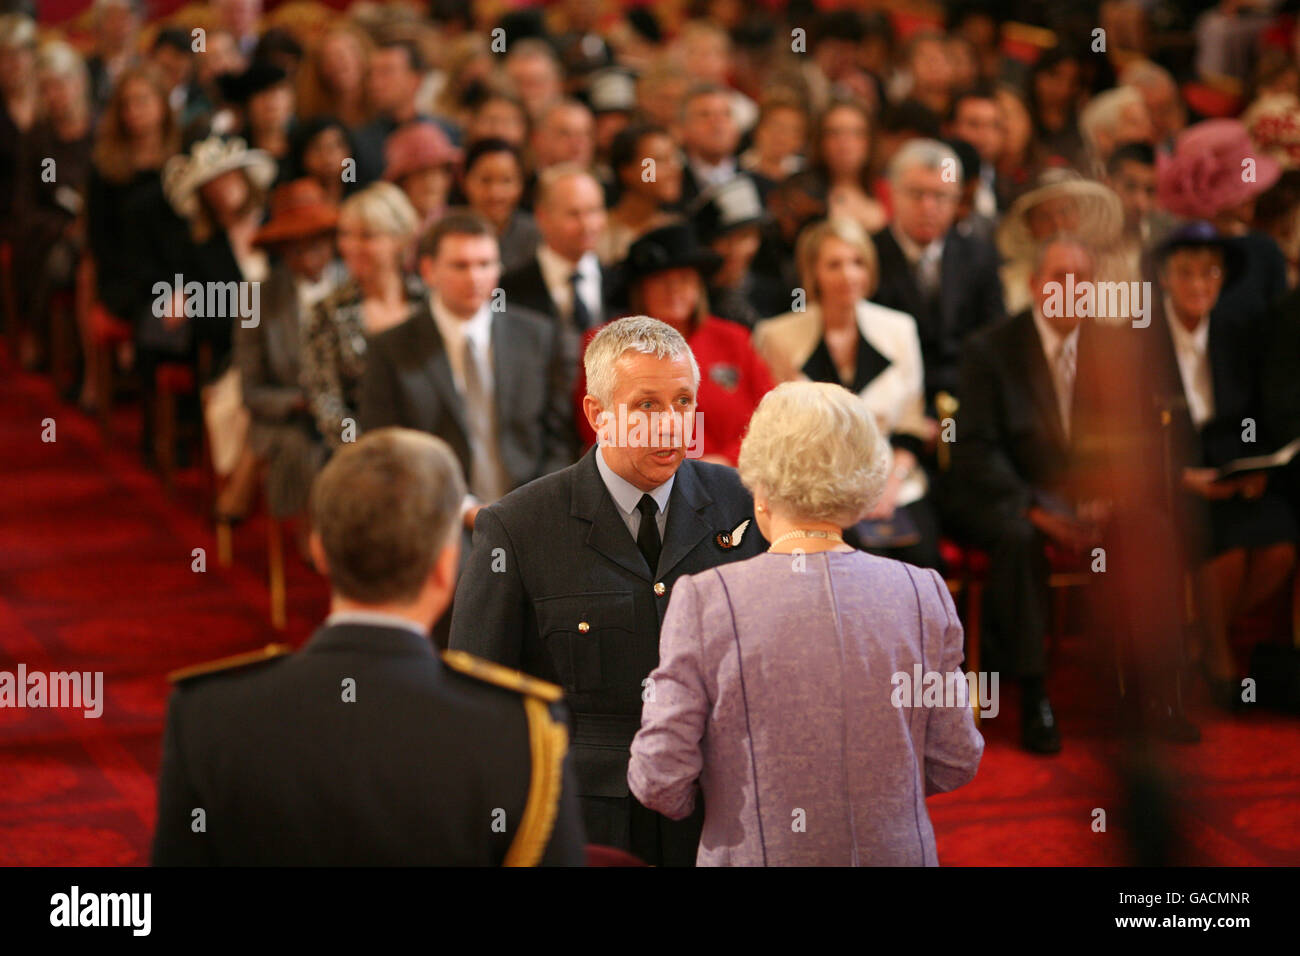 Wing Commander Steven Russell, Royal Air Force wird von der Queen am Buckingham Palace zur OBE gemacht. Stockfoto